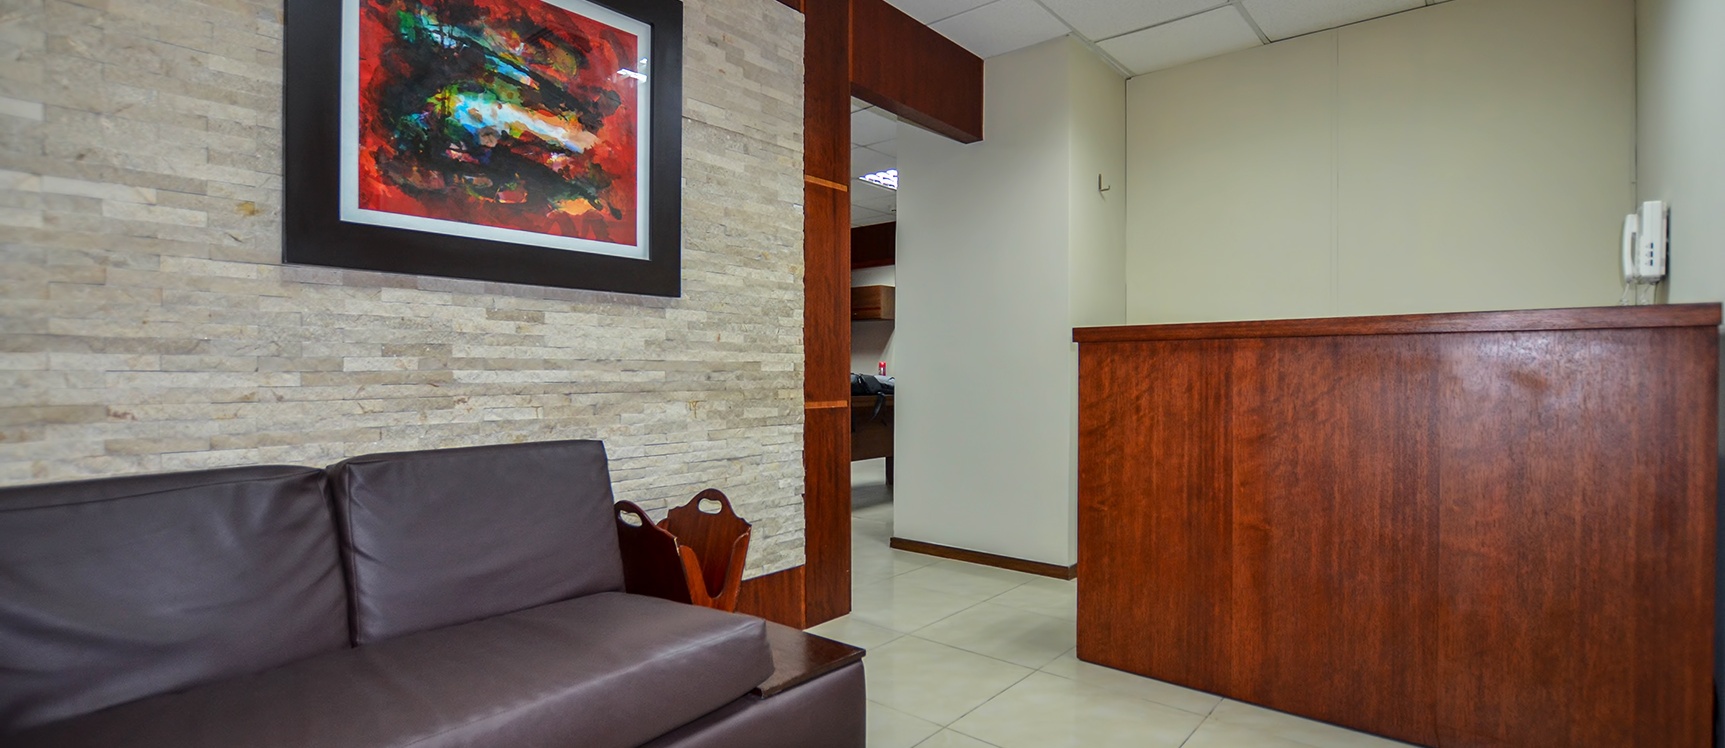 GeoBienes - Oficina en alquiler en Trade Building sector norte de Guayaquil - Plusvalia Guayaquil Casas de venta y alquiler Inmobiliaria Ecuador